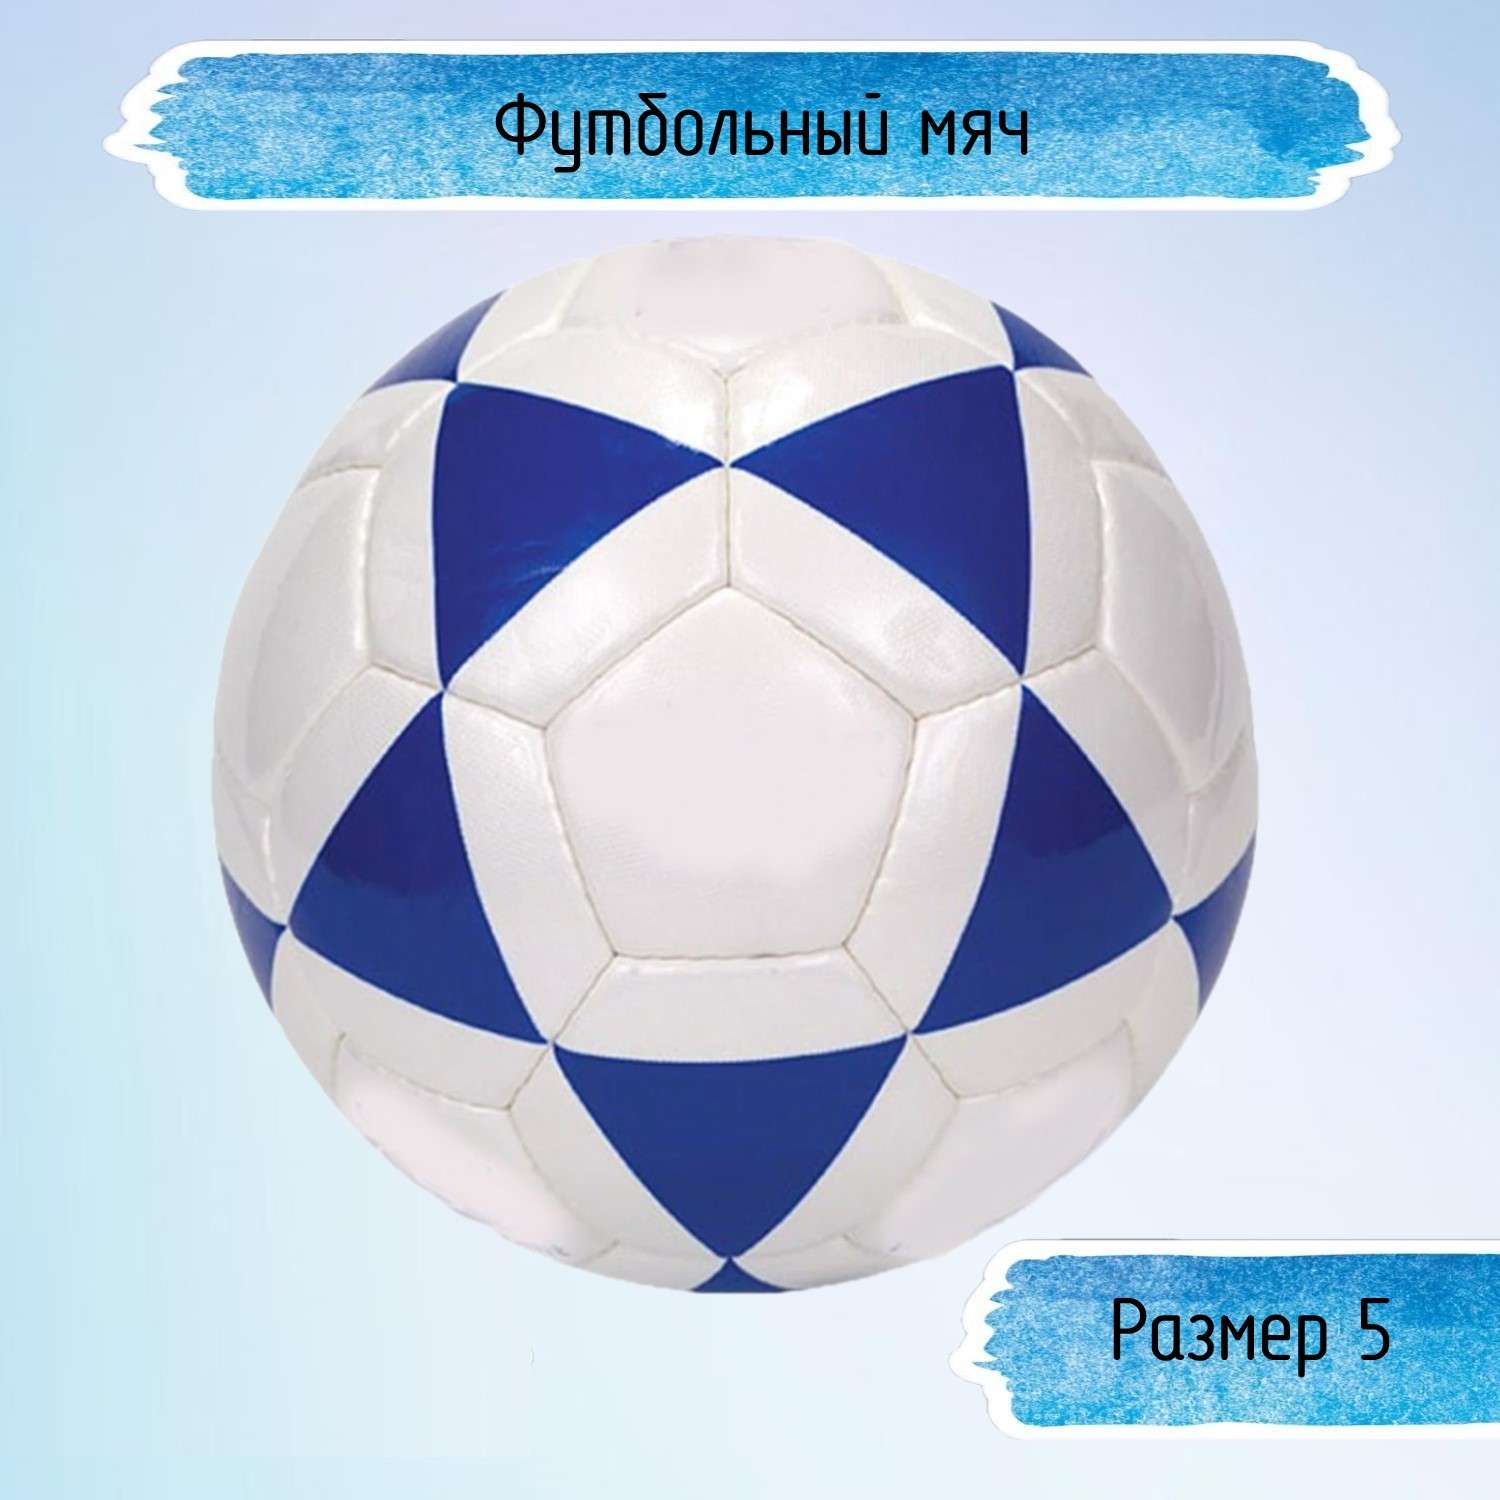 Футбольный мяч Uniglodis размер 5 бело-синий - фото 1